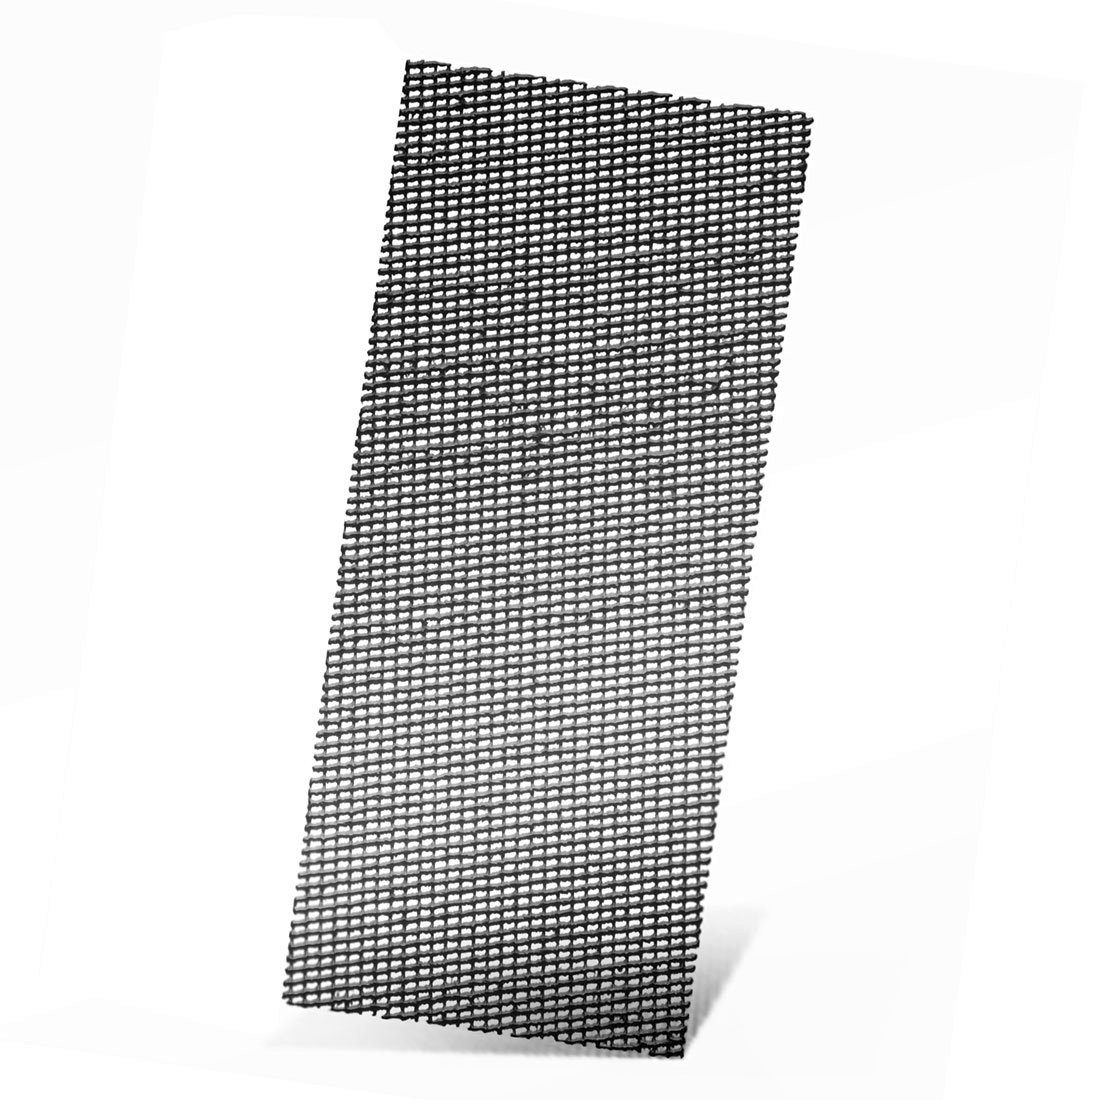 MENZER Schleifpapier 280 x 115 mm Schleifgitter für Handschleifer, Siliciumcarbid, 10 Stk., K80